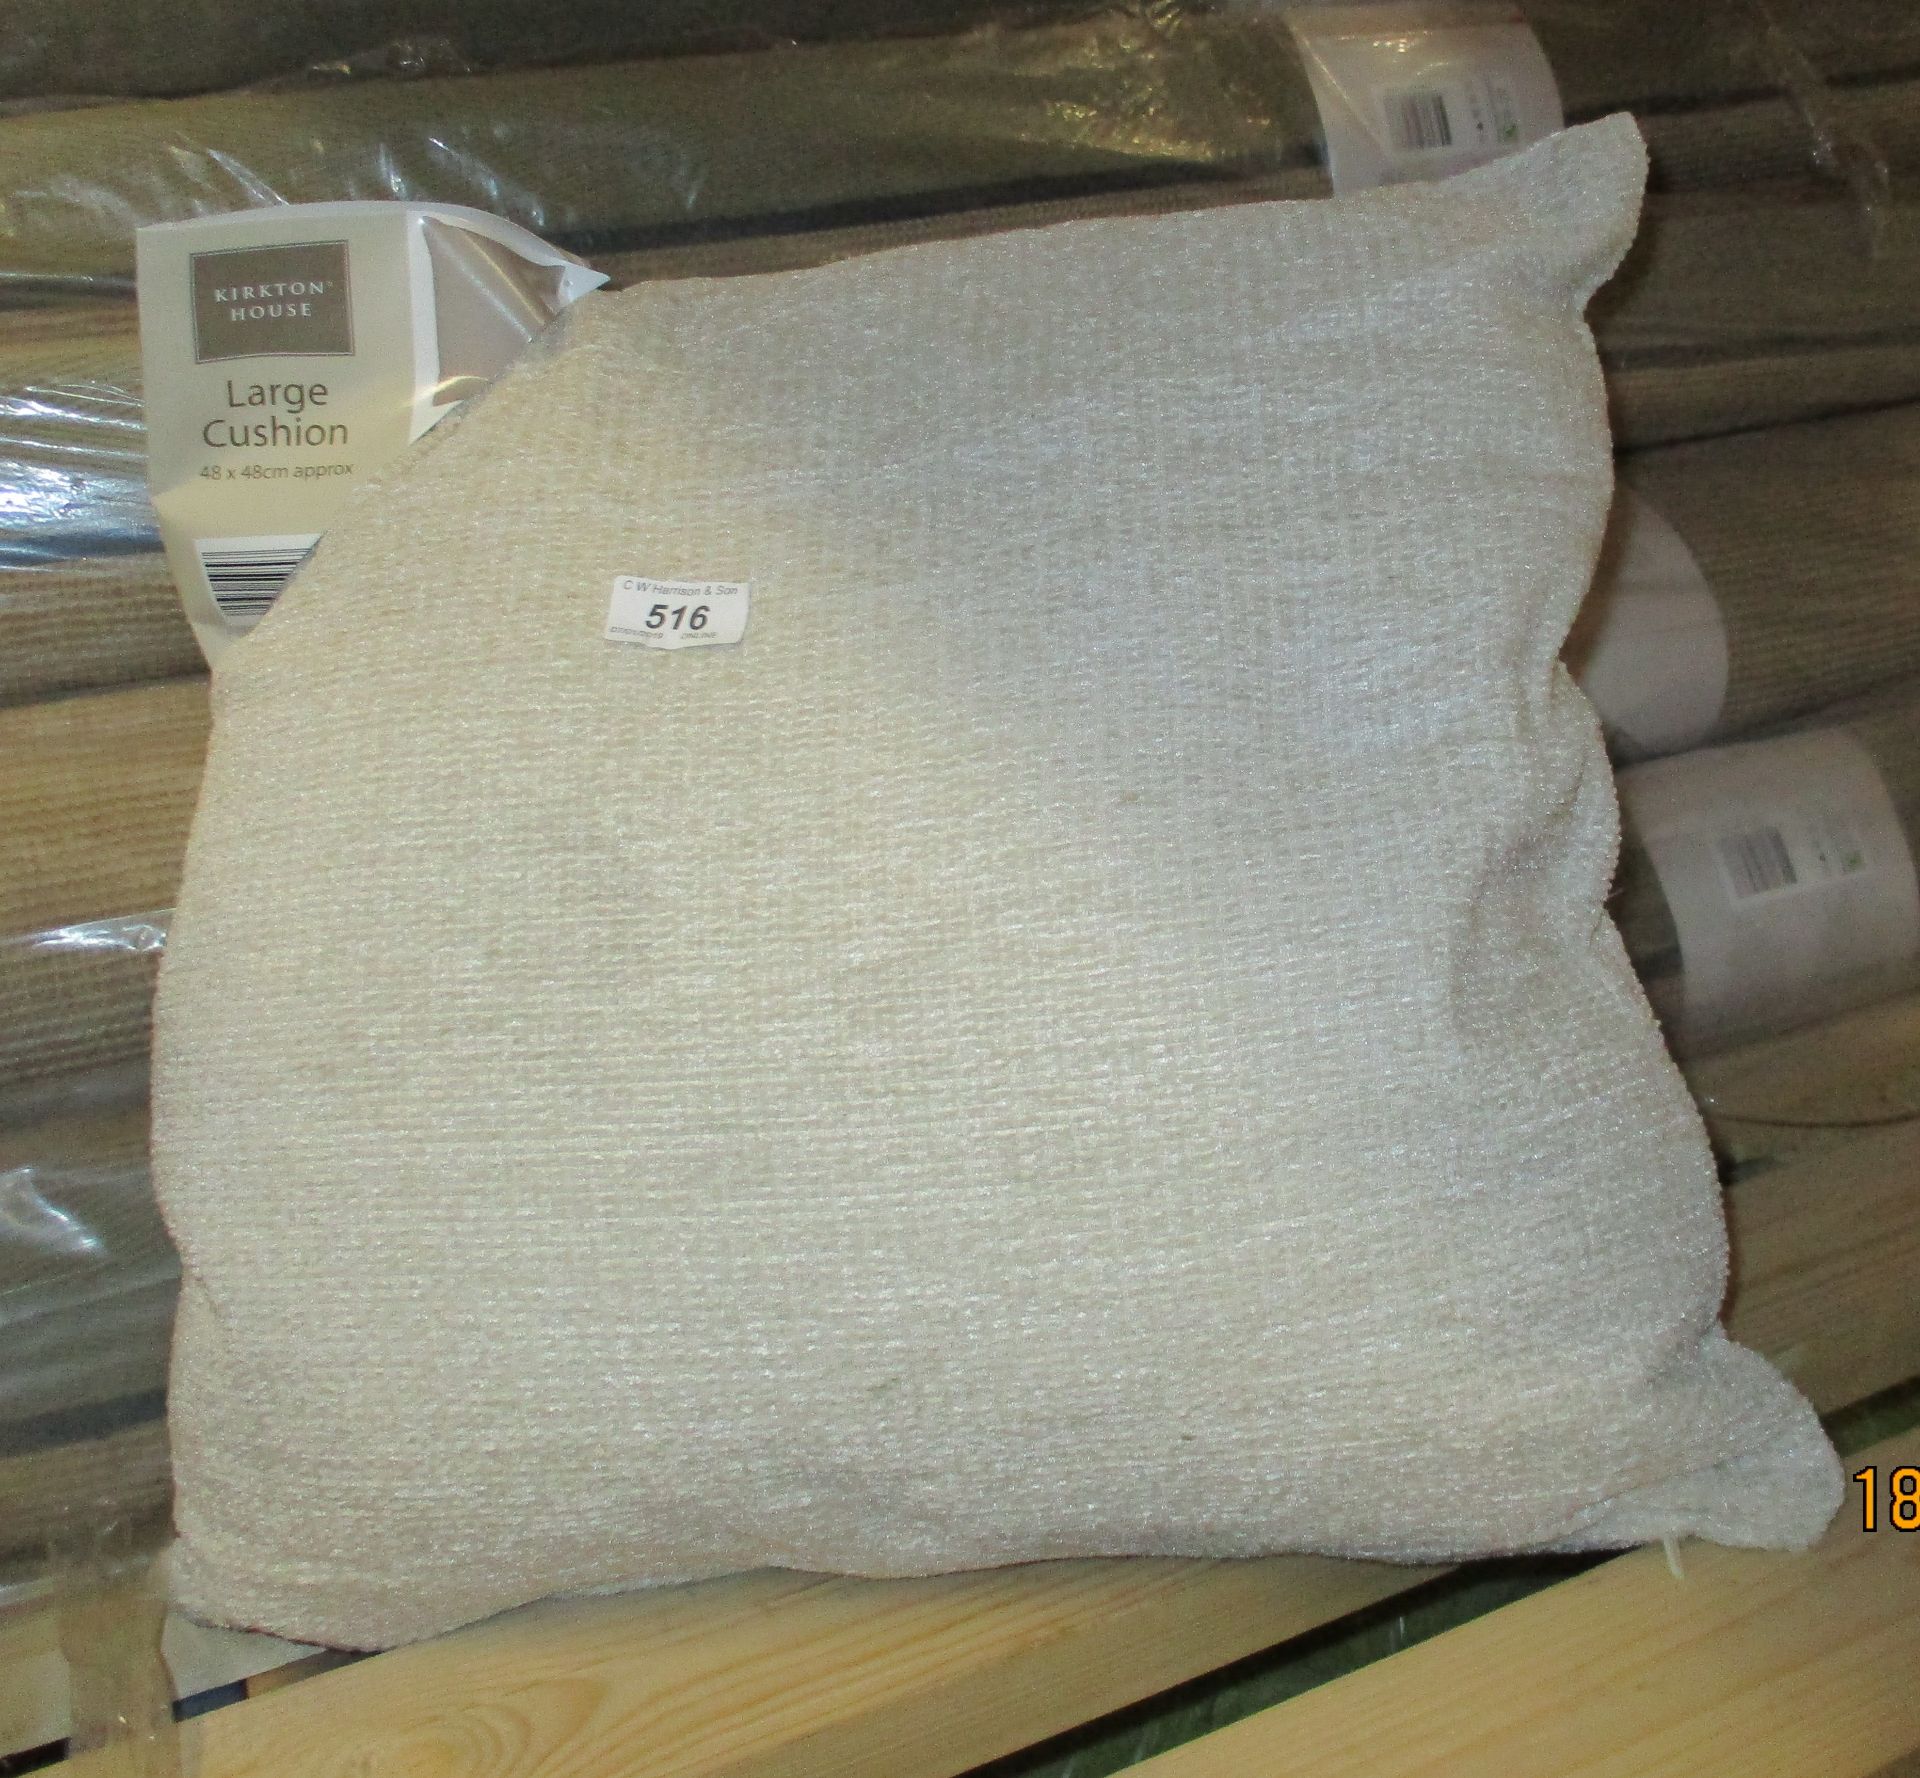 10 x Kirkton House beige cushions 48 x 48cm